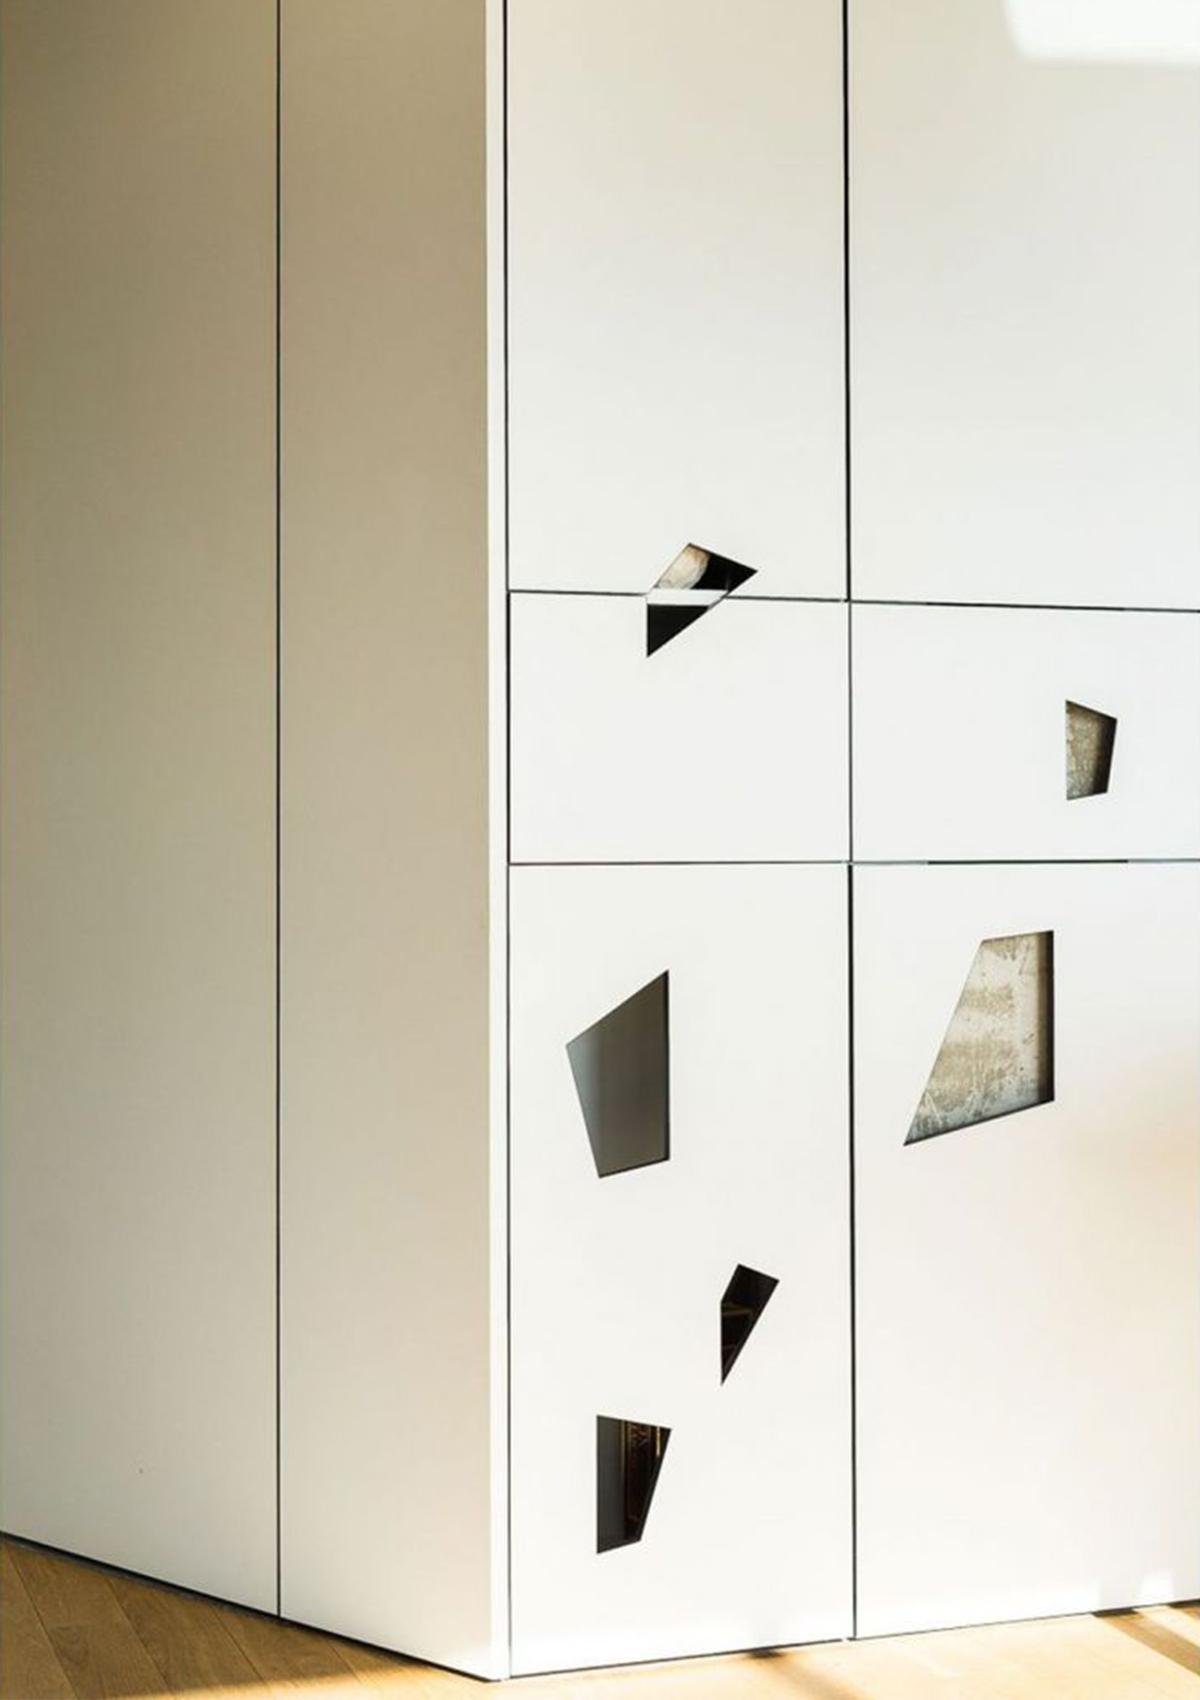 Thiết kế nội thất căn hộ Penthouse với những mảng hình học bất đối xứng cực kỳ lạ mắt